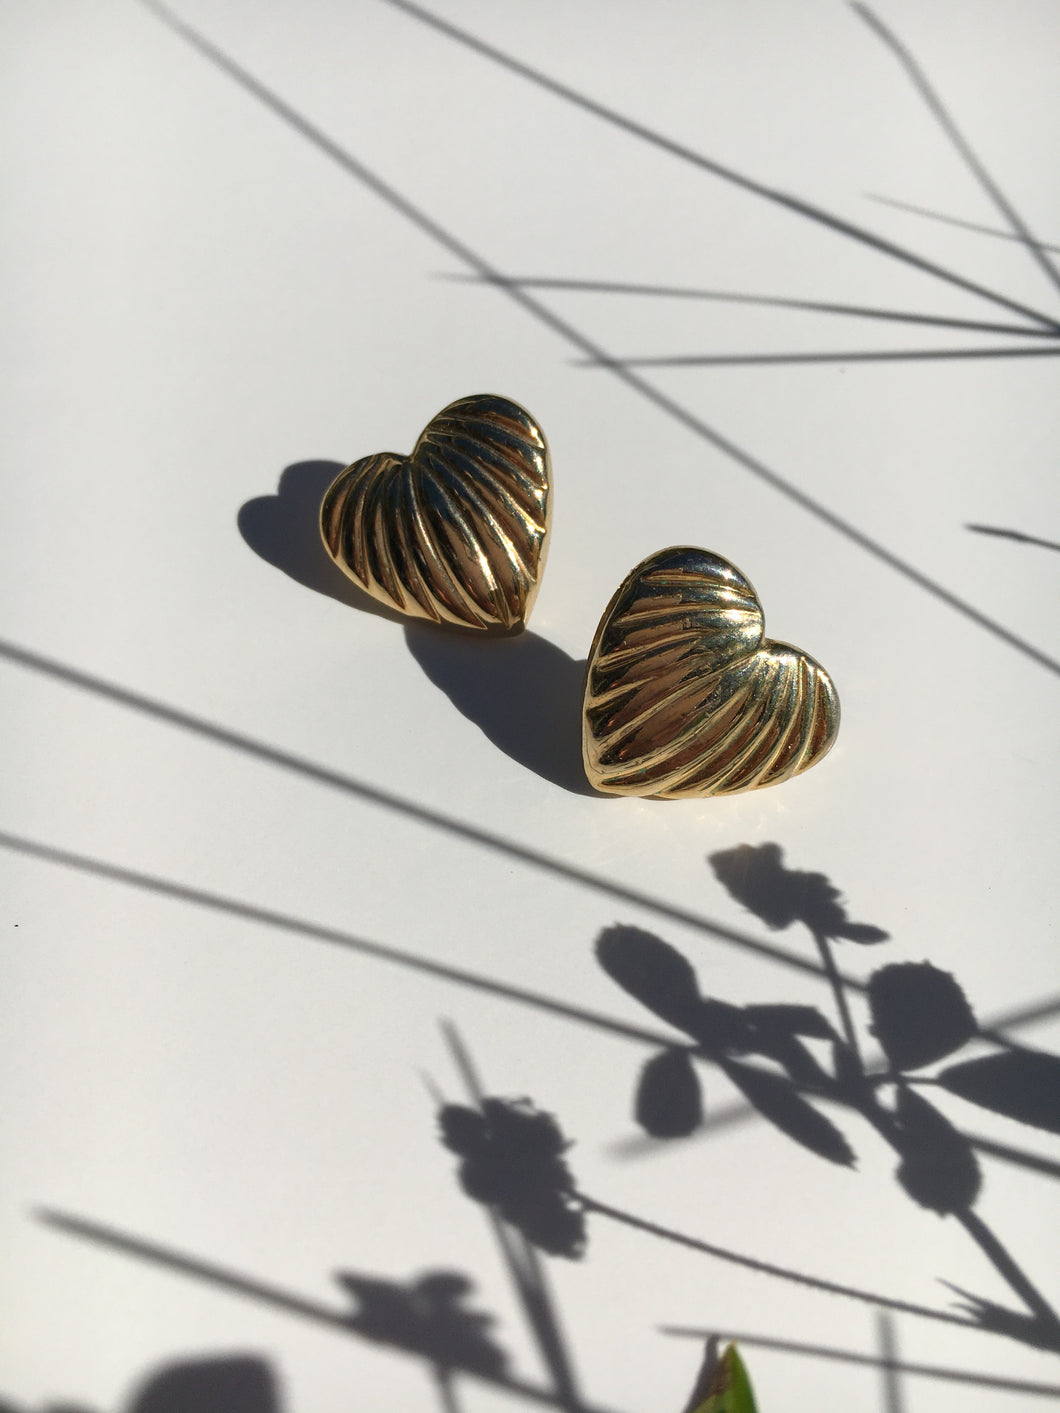 Gold Tone Heart Earrings